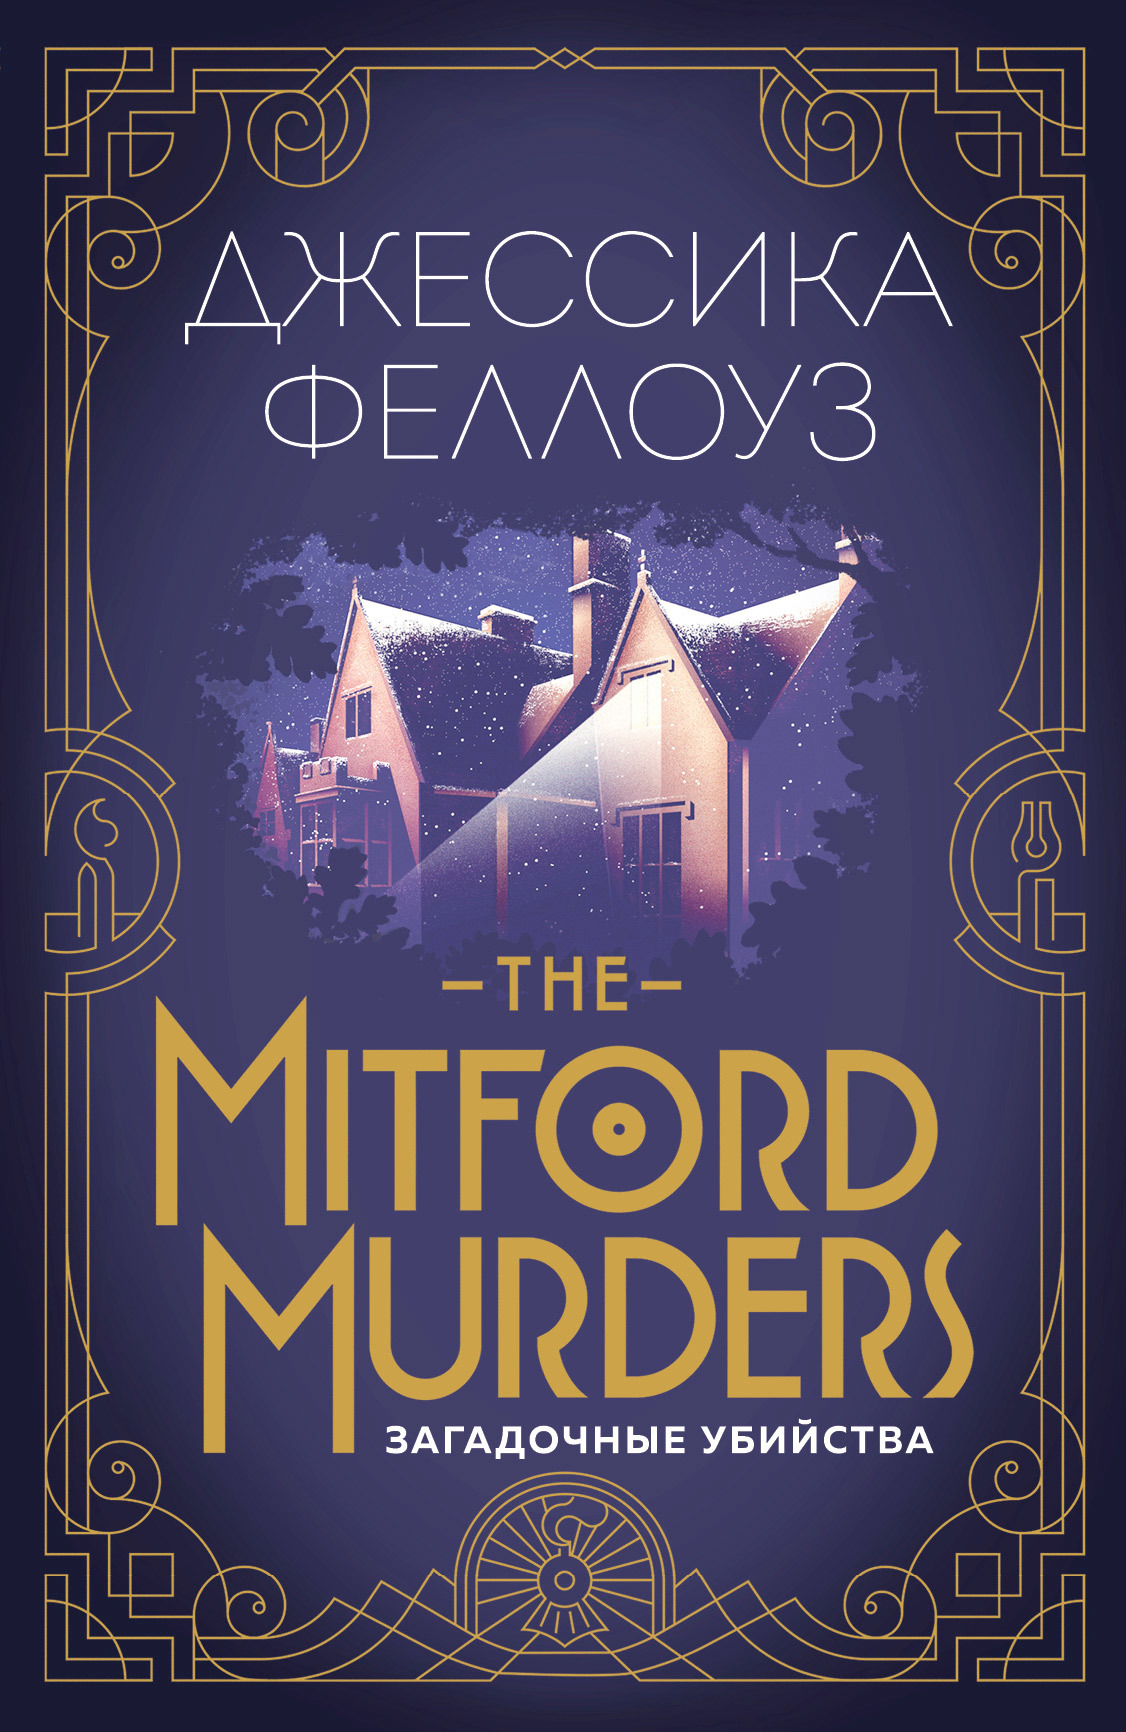 Феллоуз Джессика - The Mitford murders. Загадочные убийства скачать бесплатно